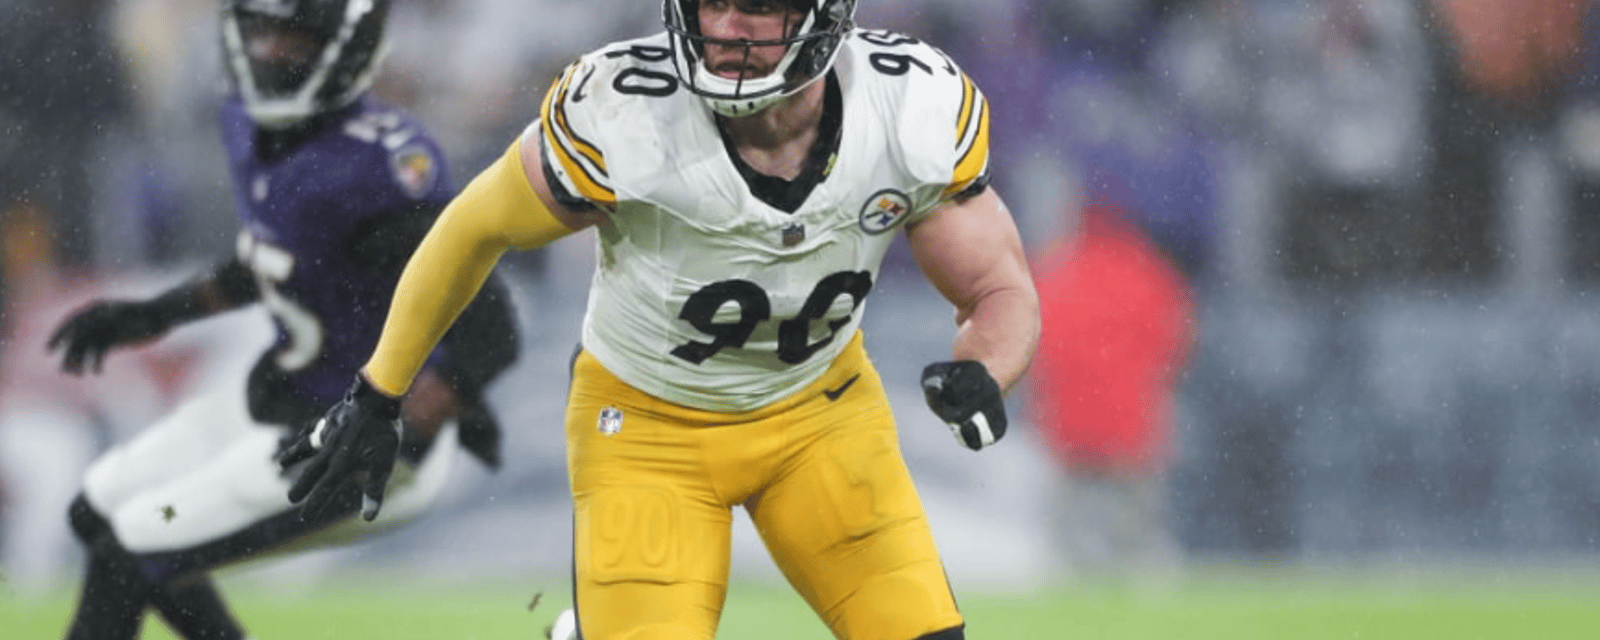 Critical update on Steelers' T.J. Watt